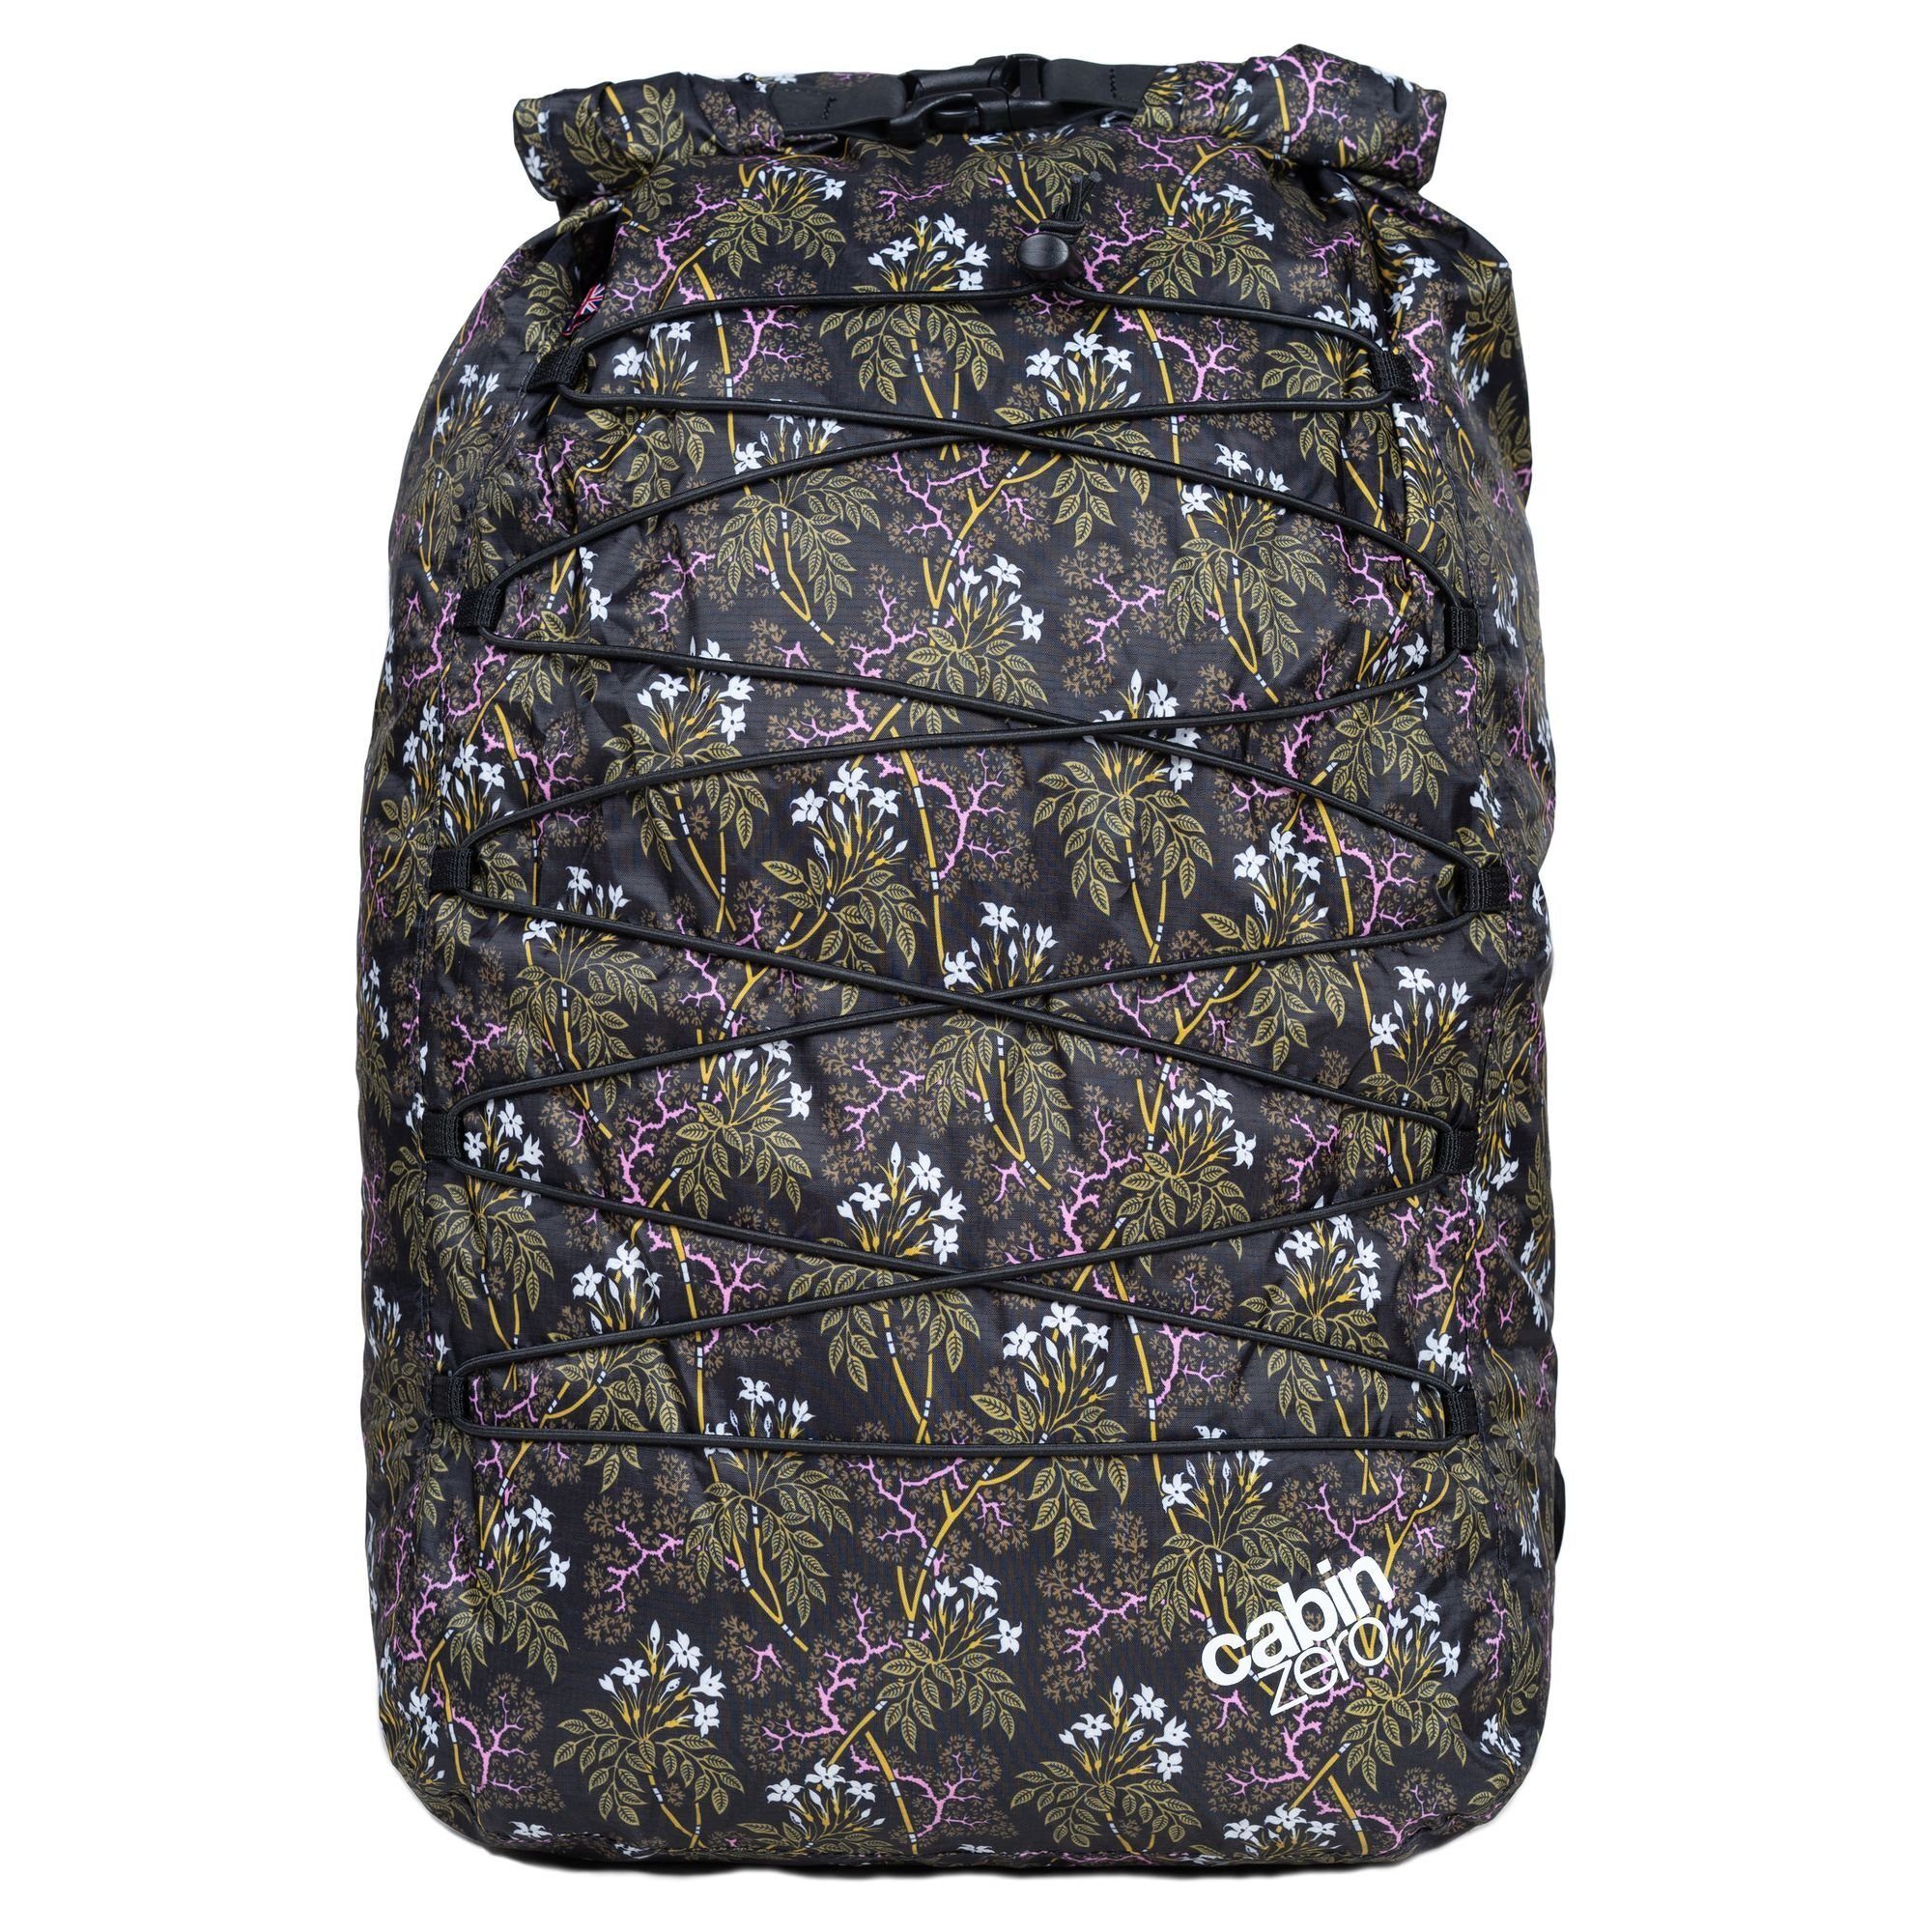 Bags, night Rucksack Nylon floral Companion Cabinzero